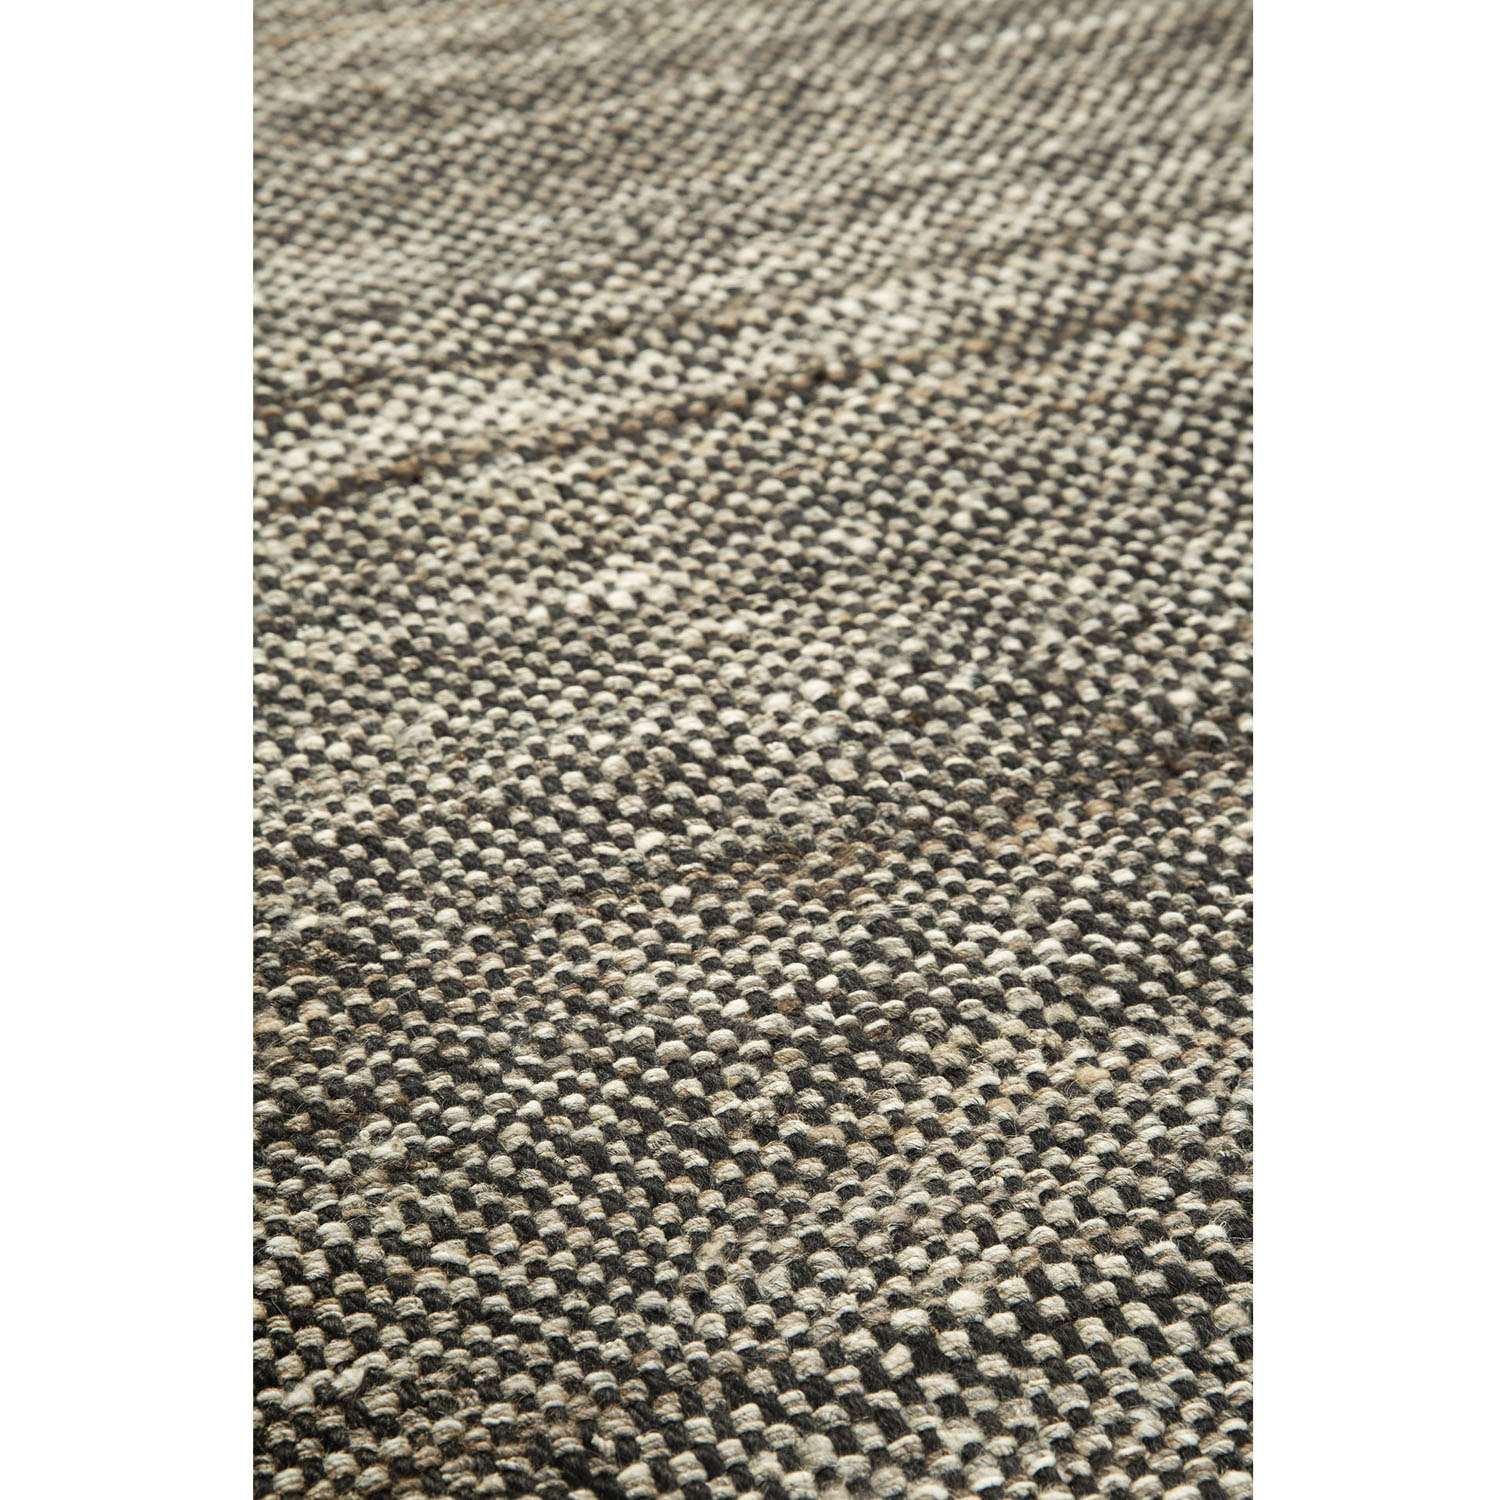 Checked Kilim-Teppich Natur 100 % handgesponnene Wolle 21729